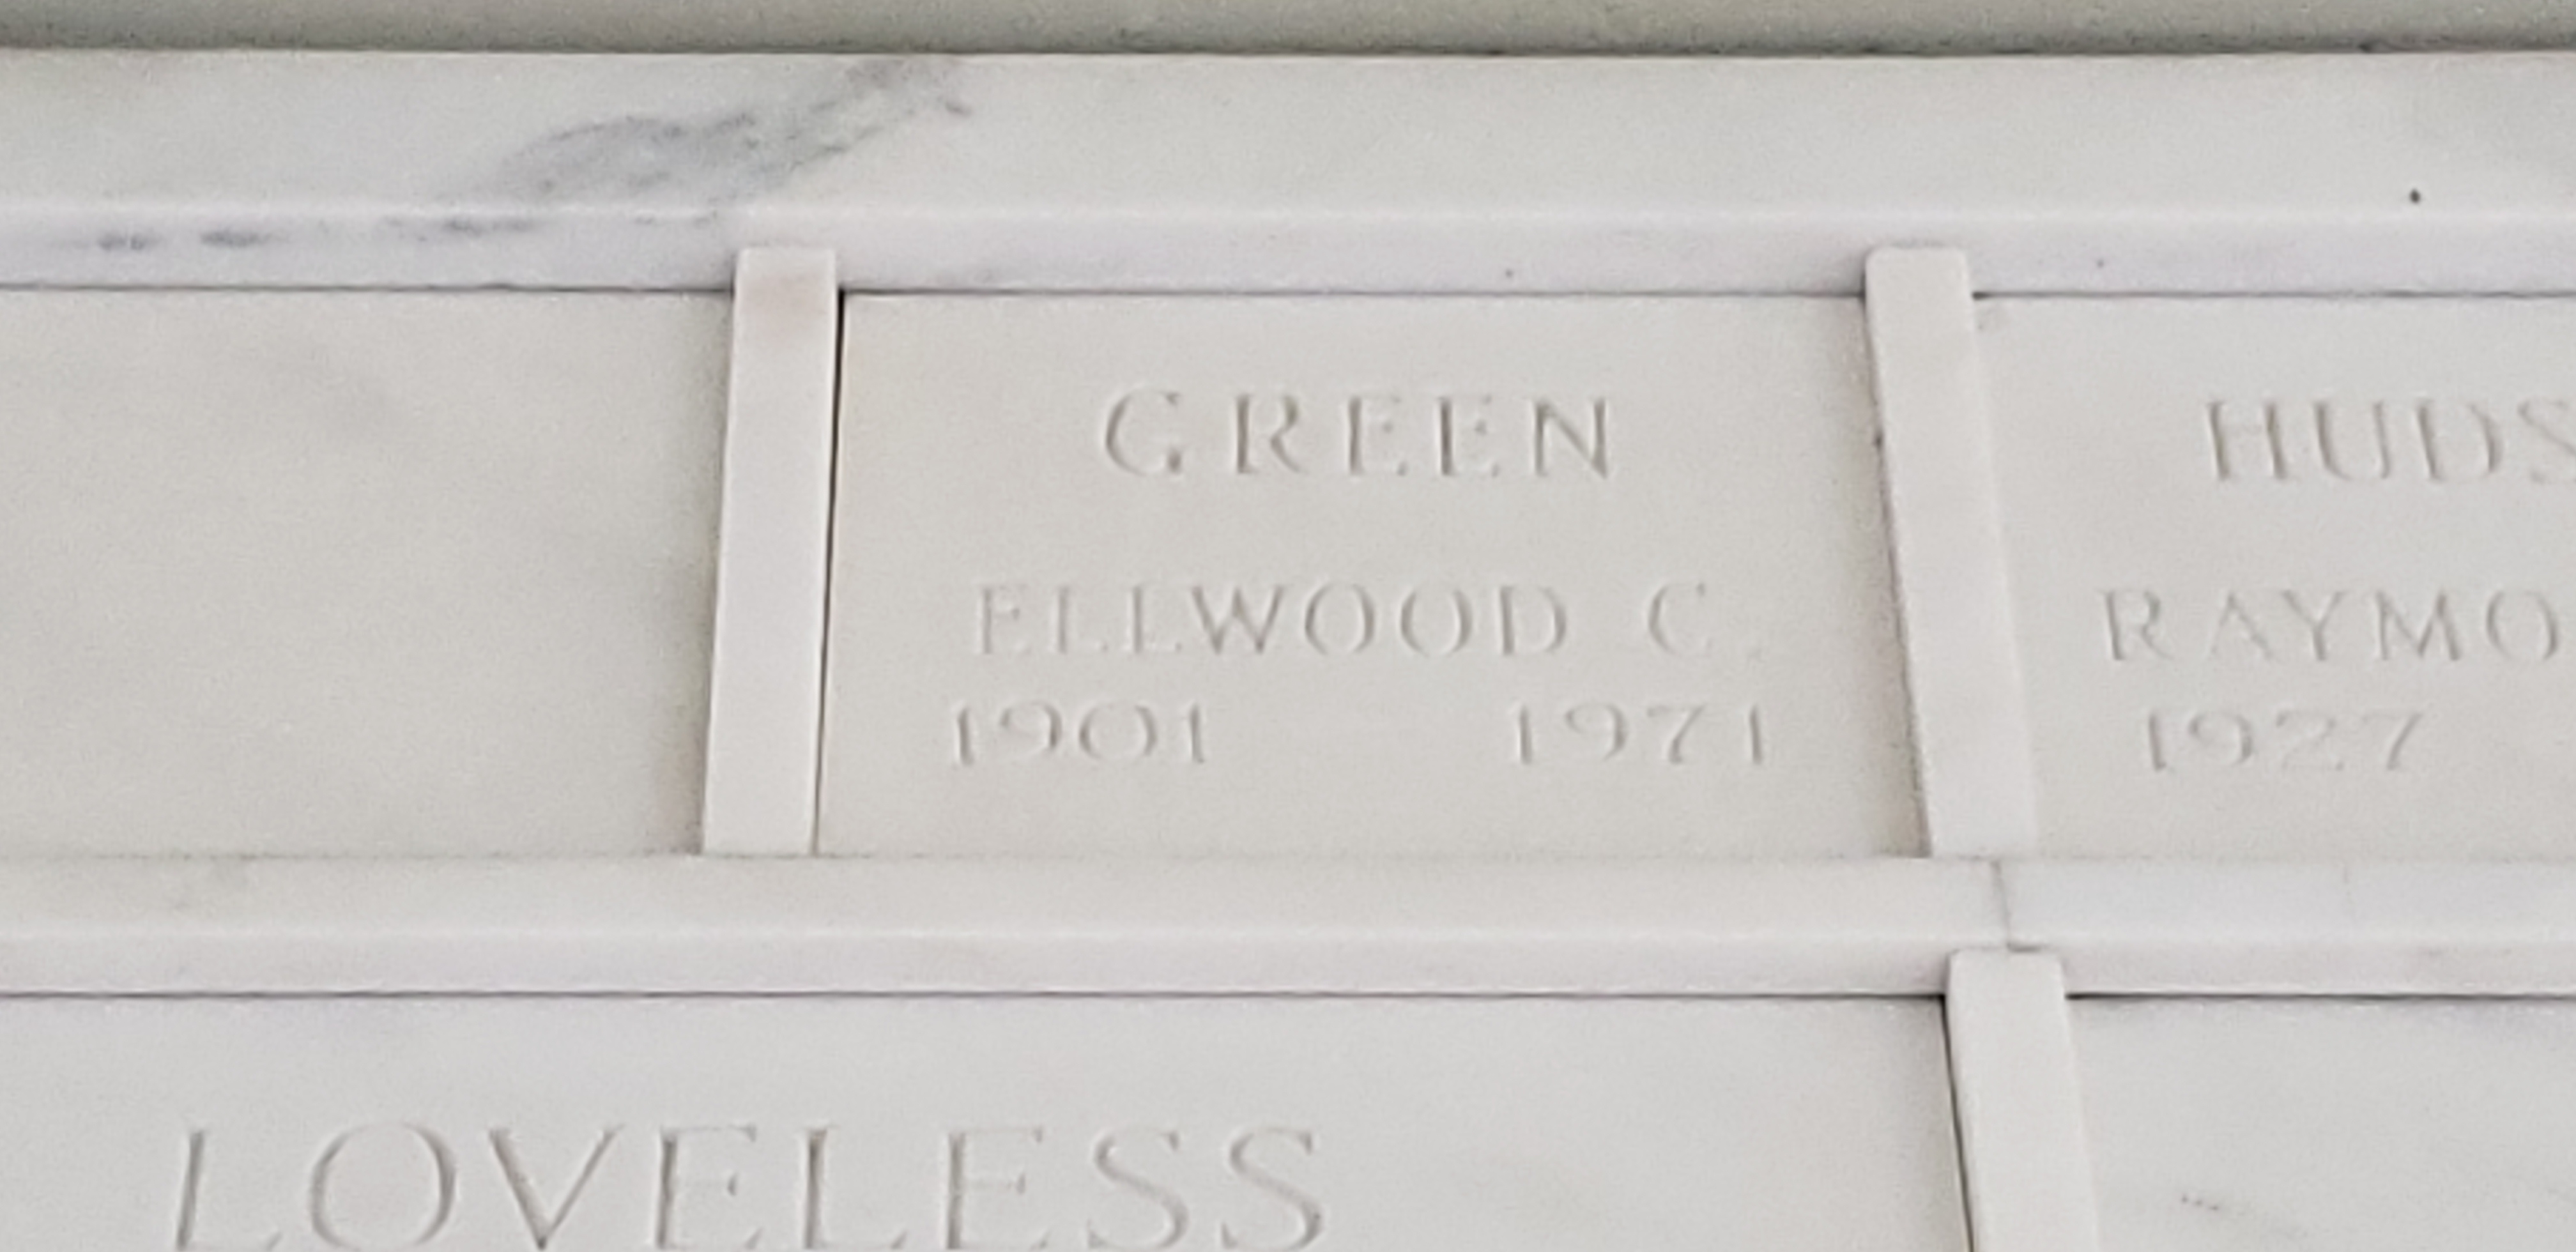 Ellwood C Green